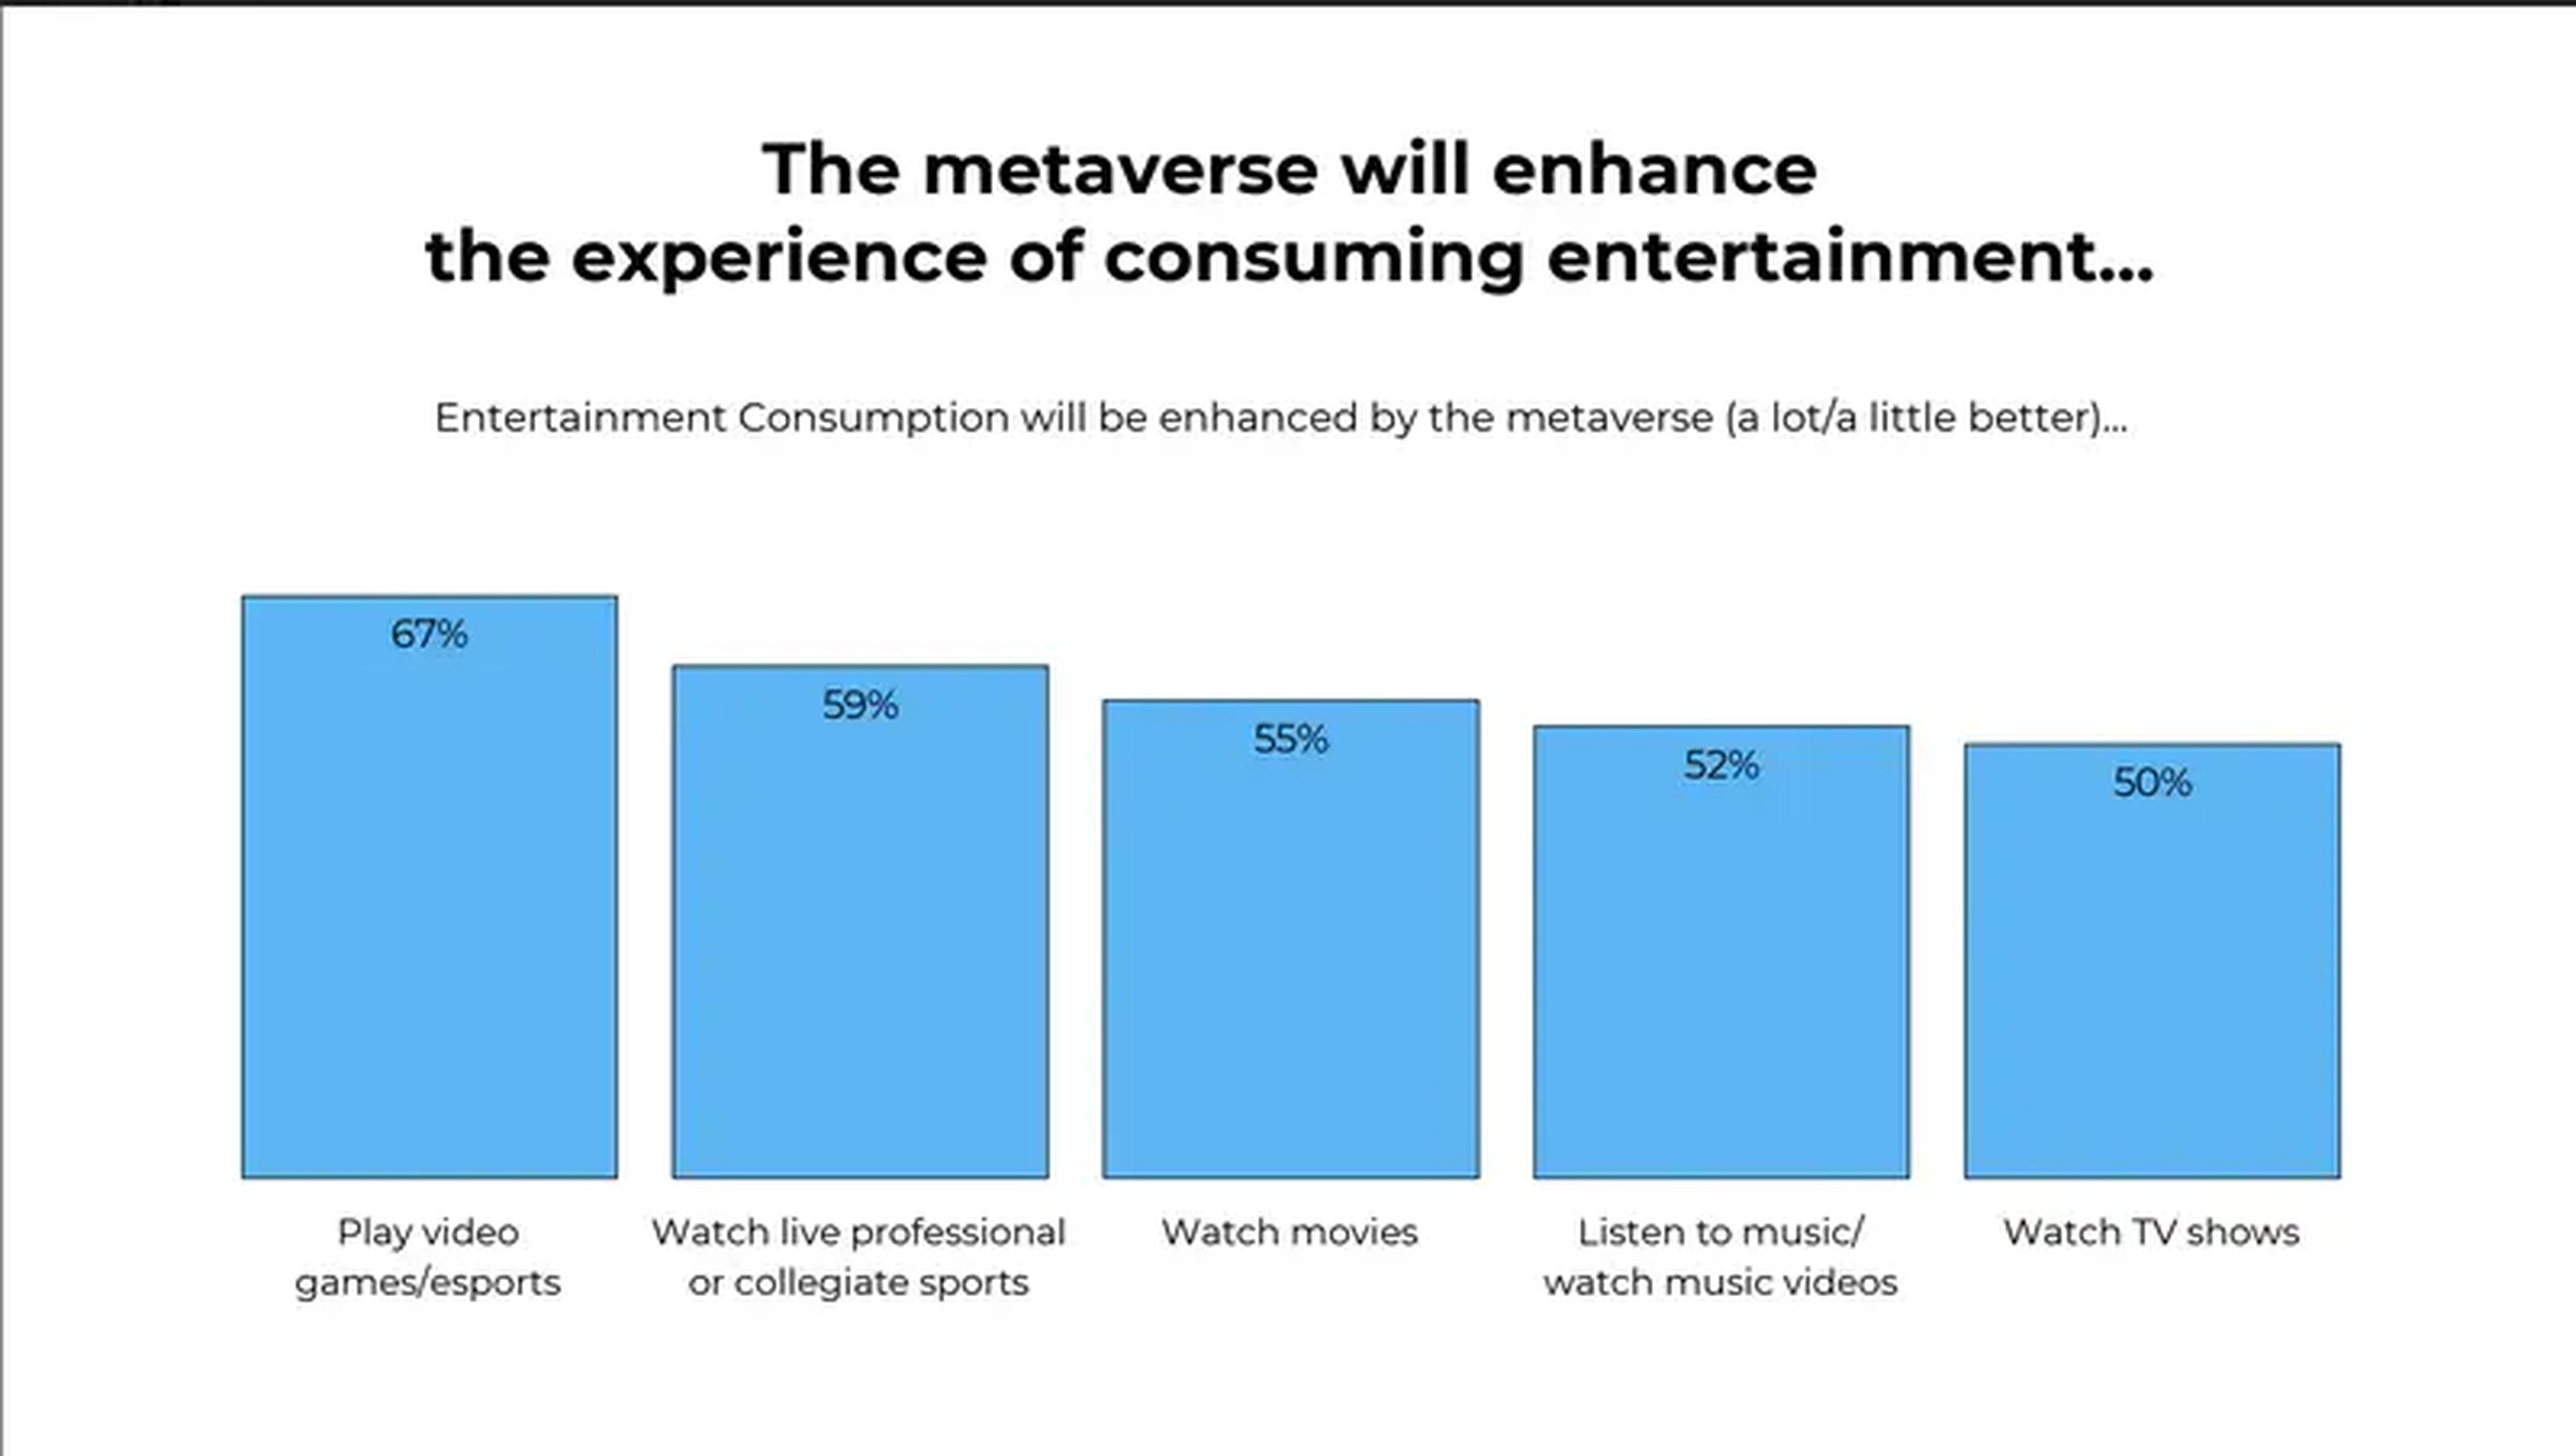 Los encuestados afirmaron que la mayor parte del entretenimiento mejoraría con el metaverso.